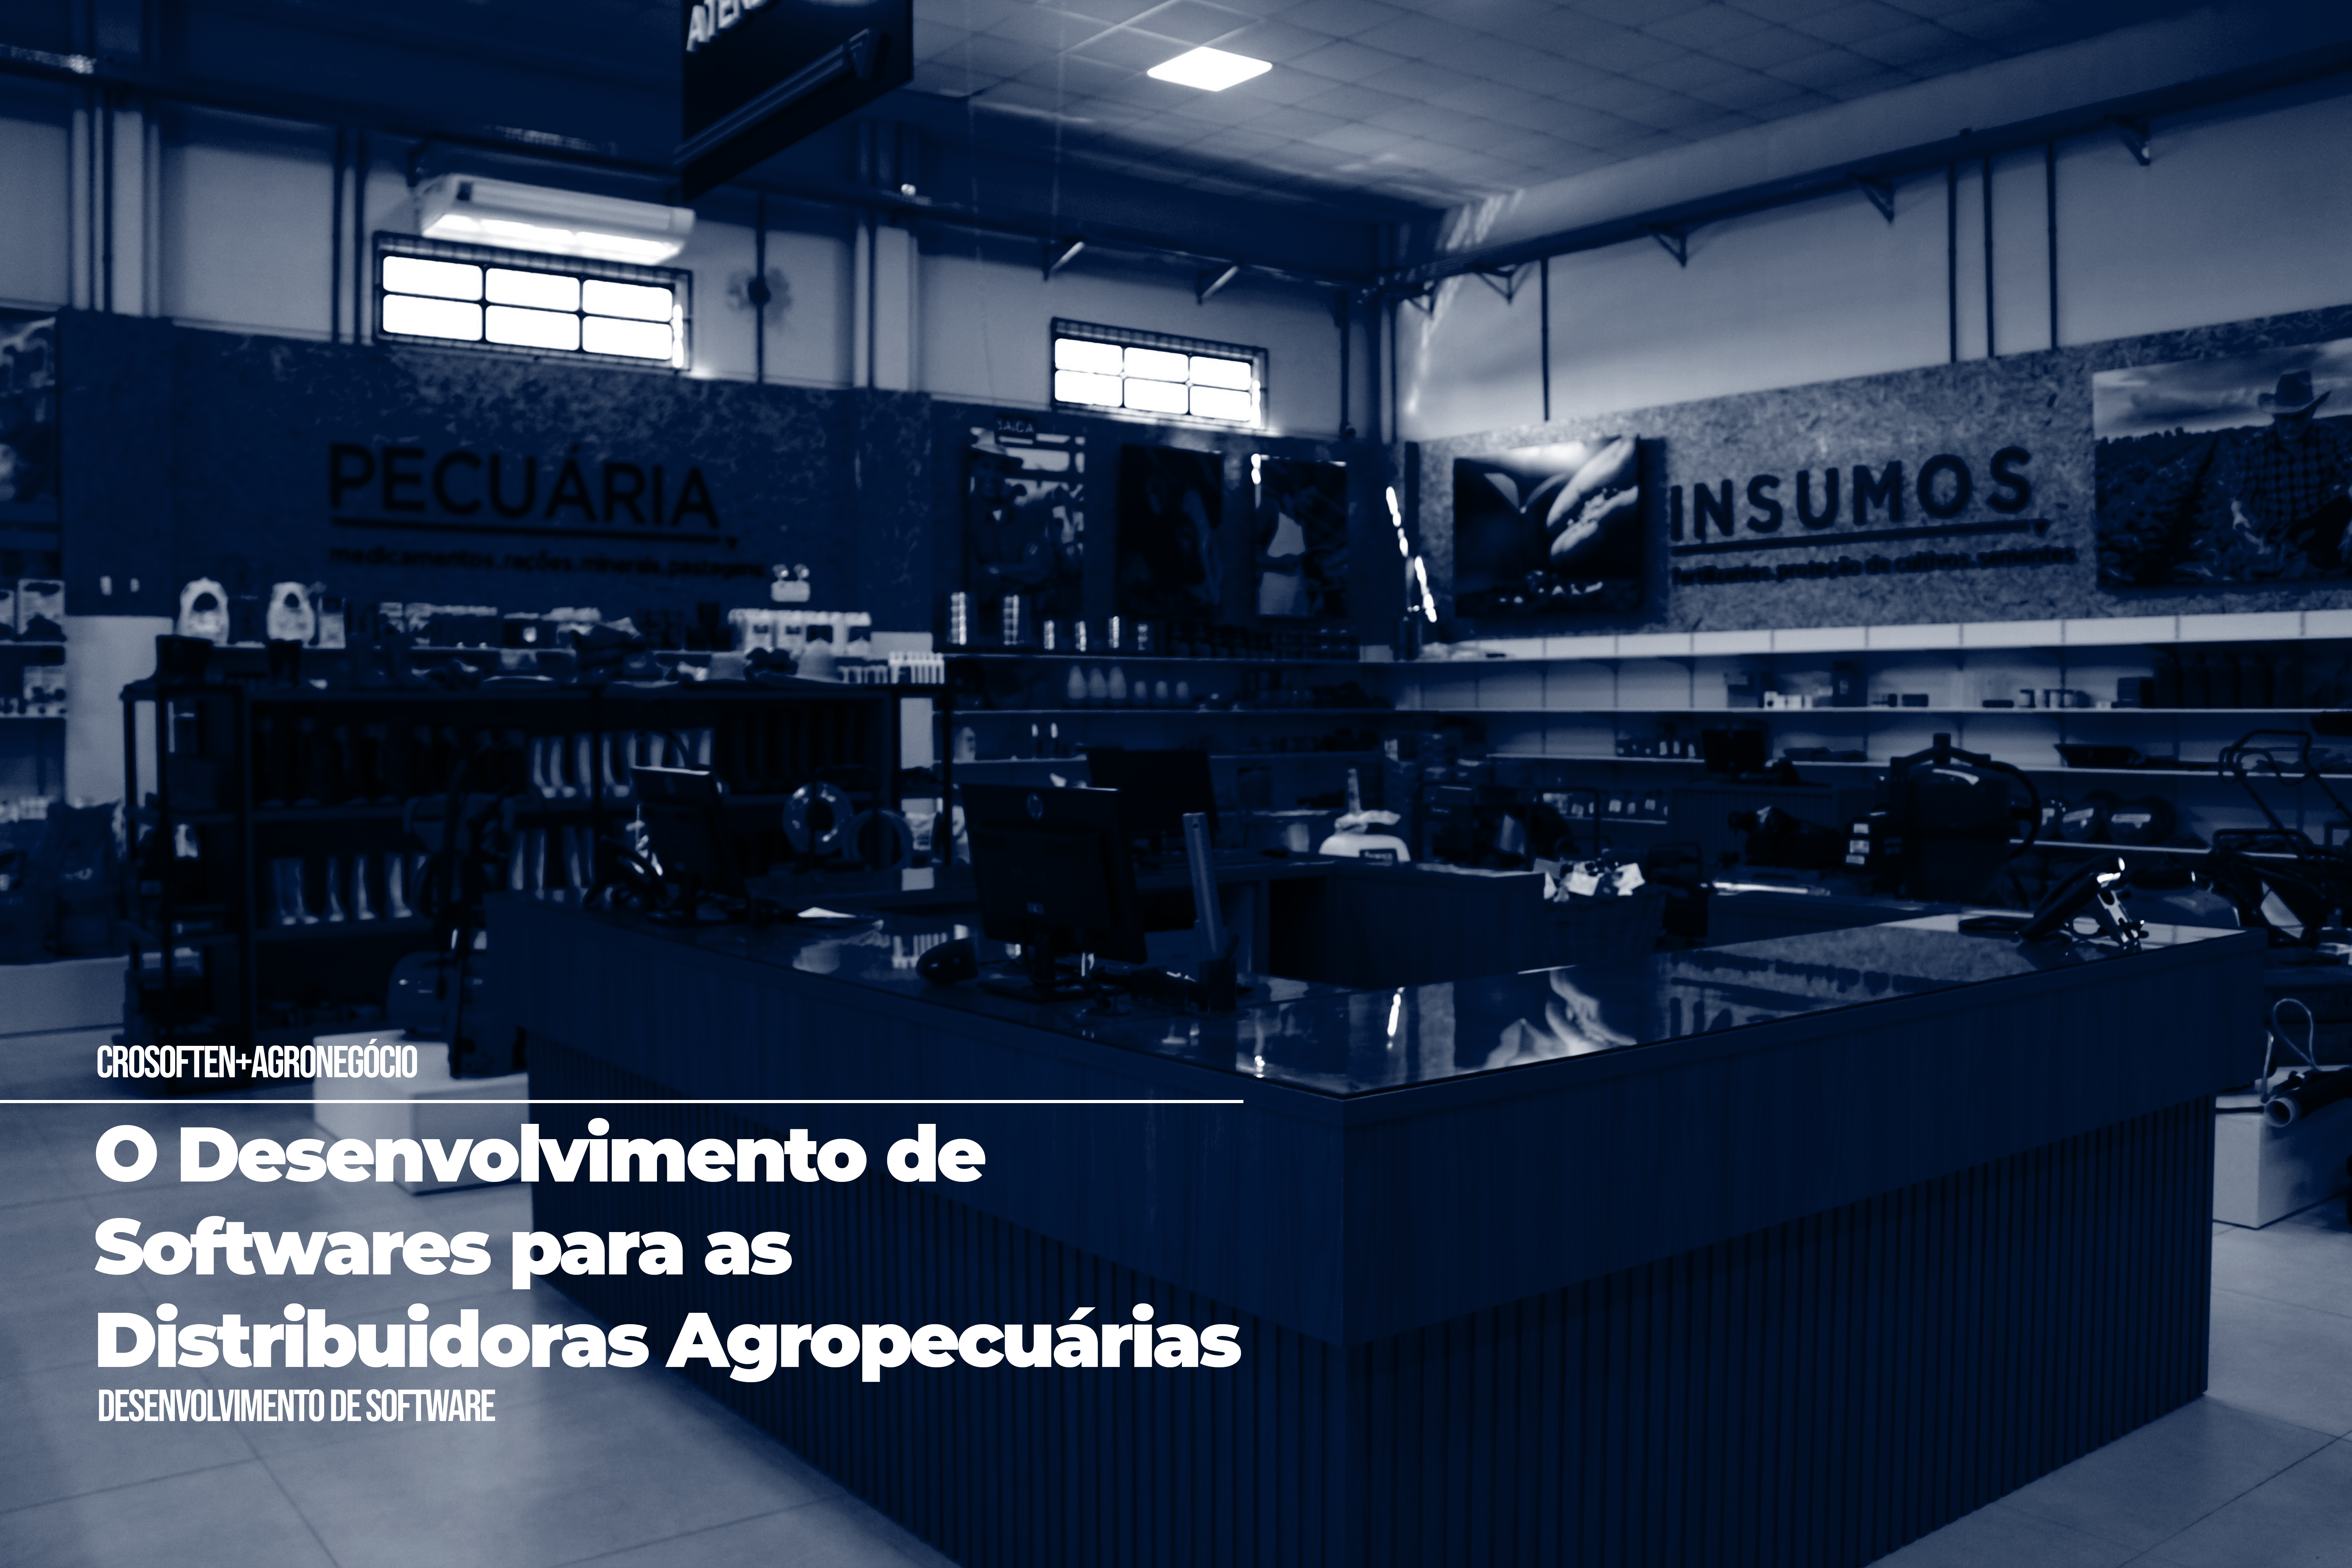 O número de softwares para as distribuidoras agropecuárias no Brasil, está cada vez maior